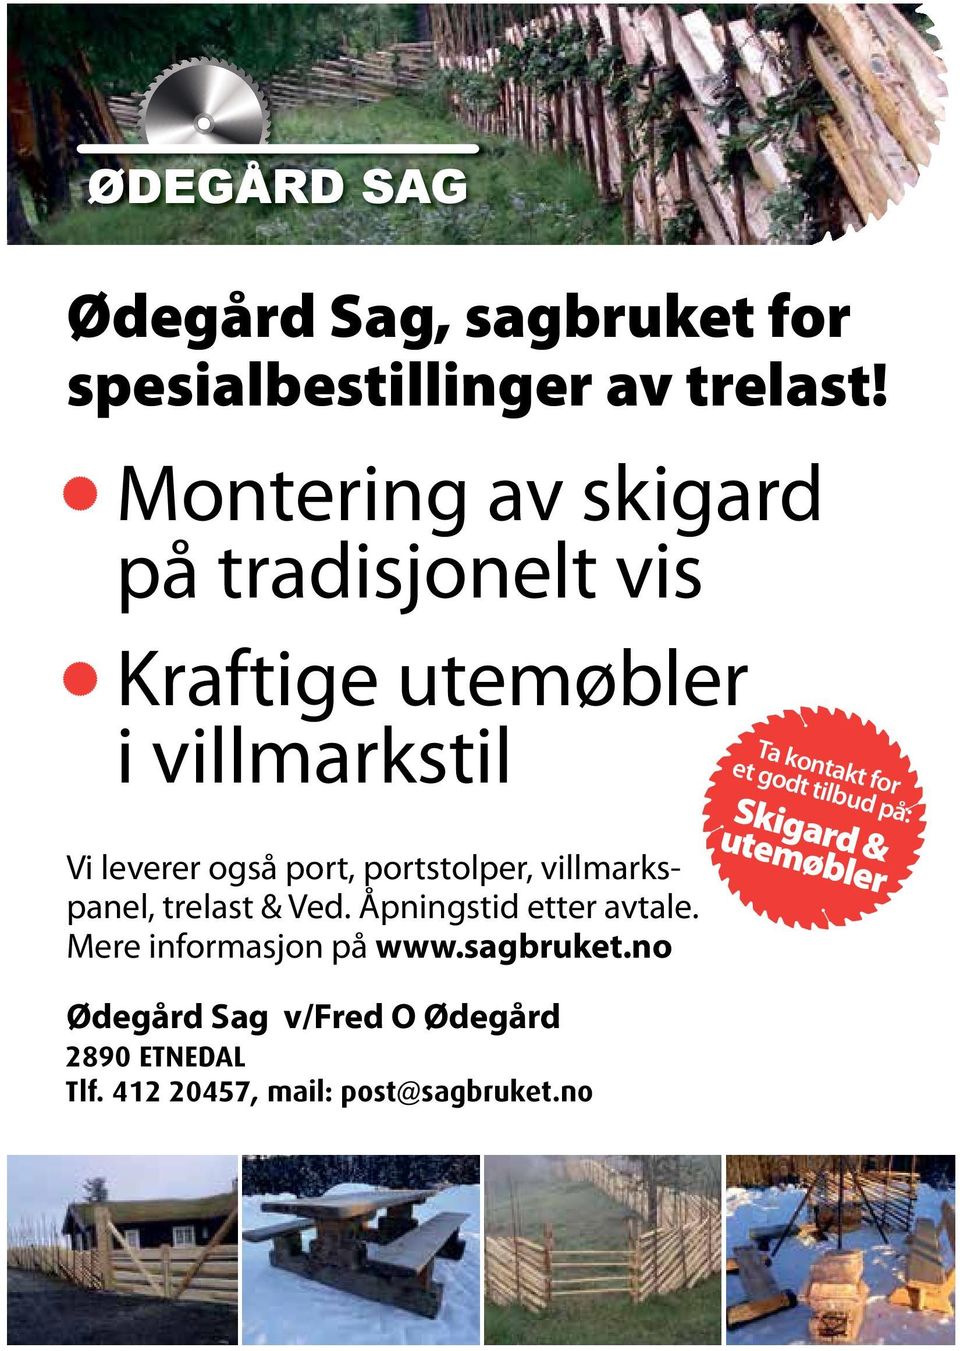 villmarkspanel, trelast & Ved. Åpningstid etter avtale. Mere informasjon på www.sagbruket.